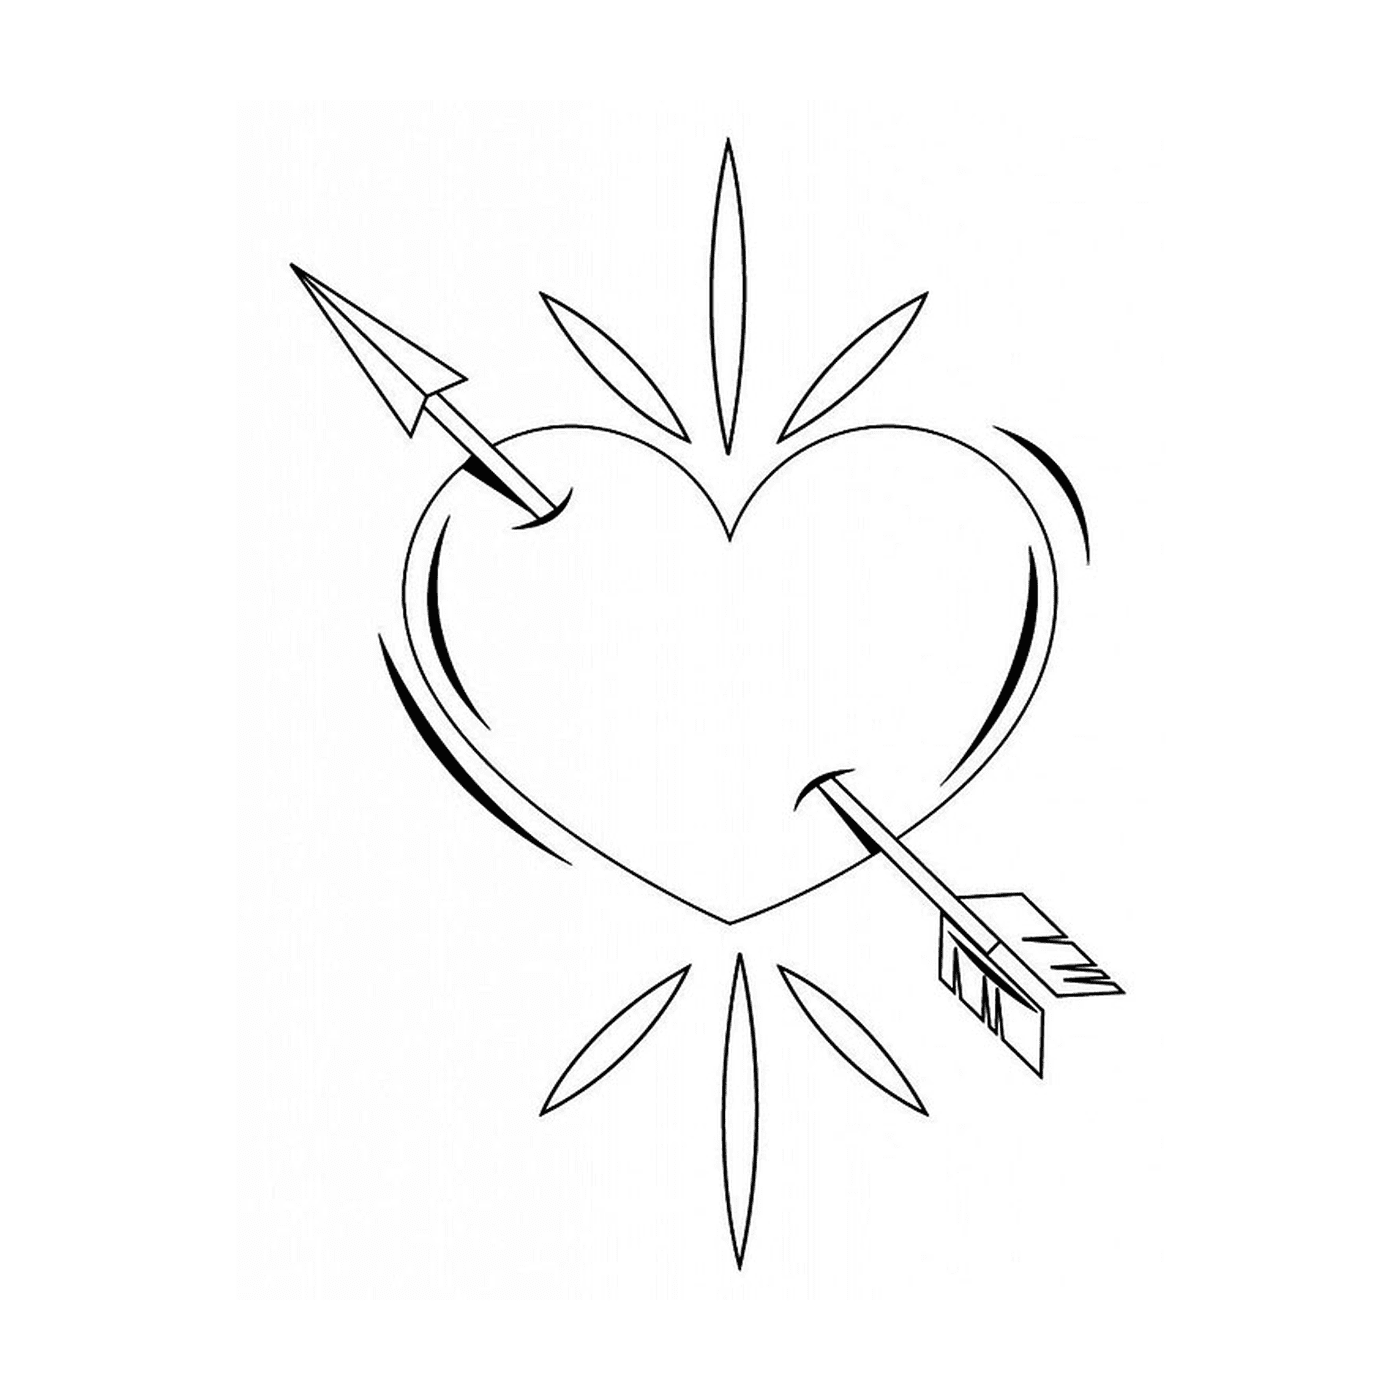  Ein Herz durchbohrt von einem Pfeil in schwarzer Tinte gezeichnet 